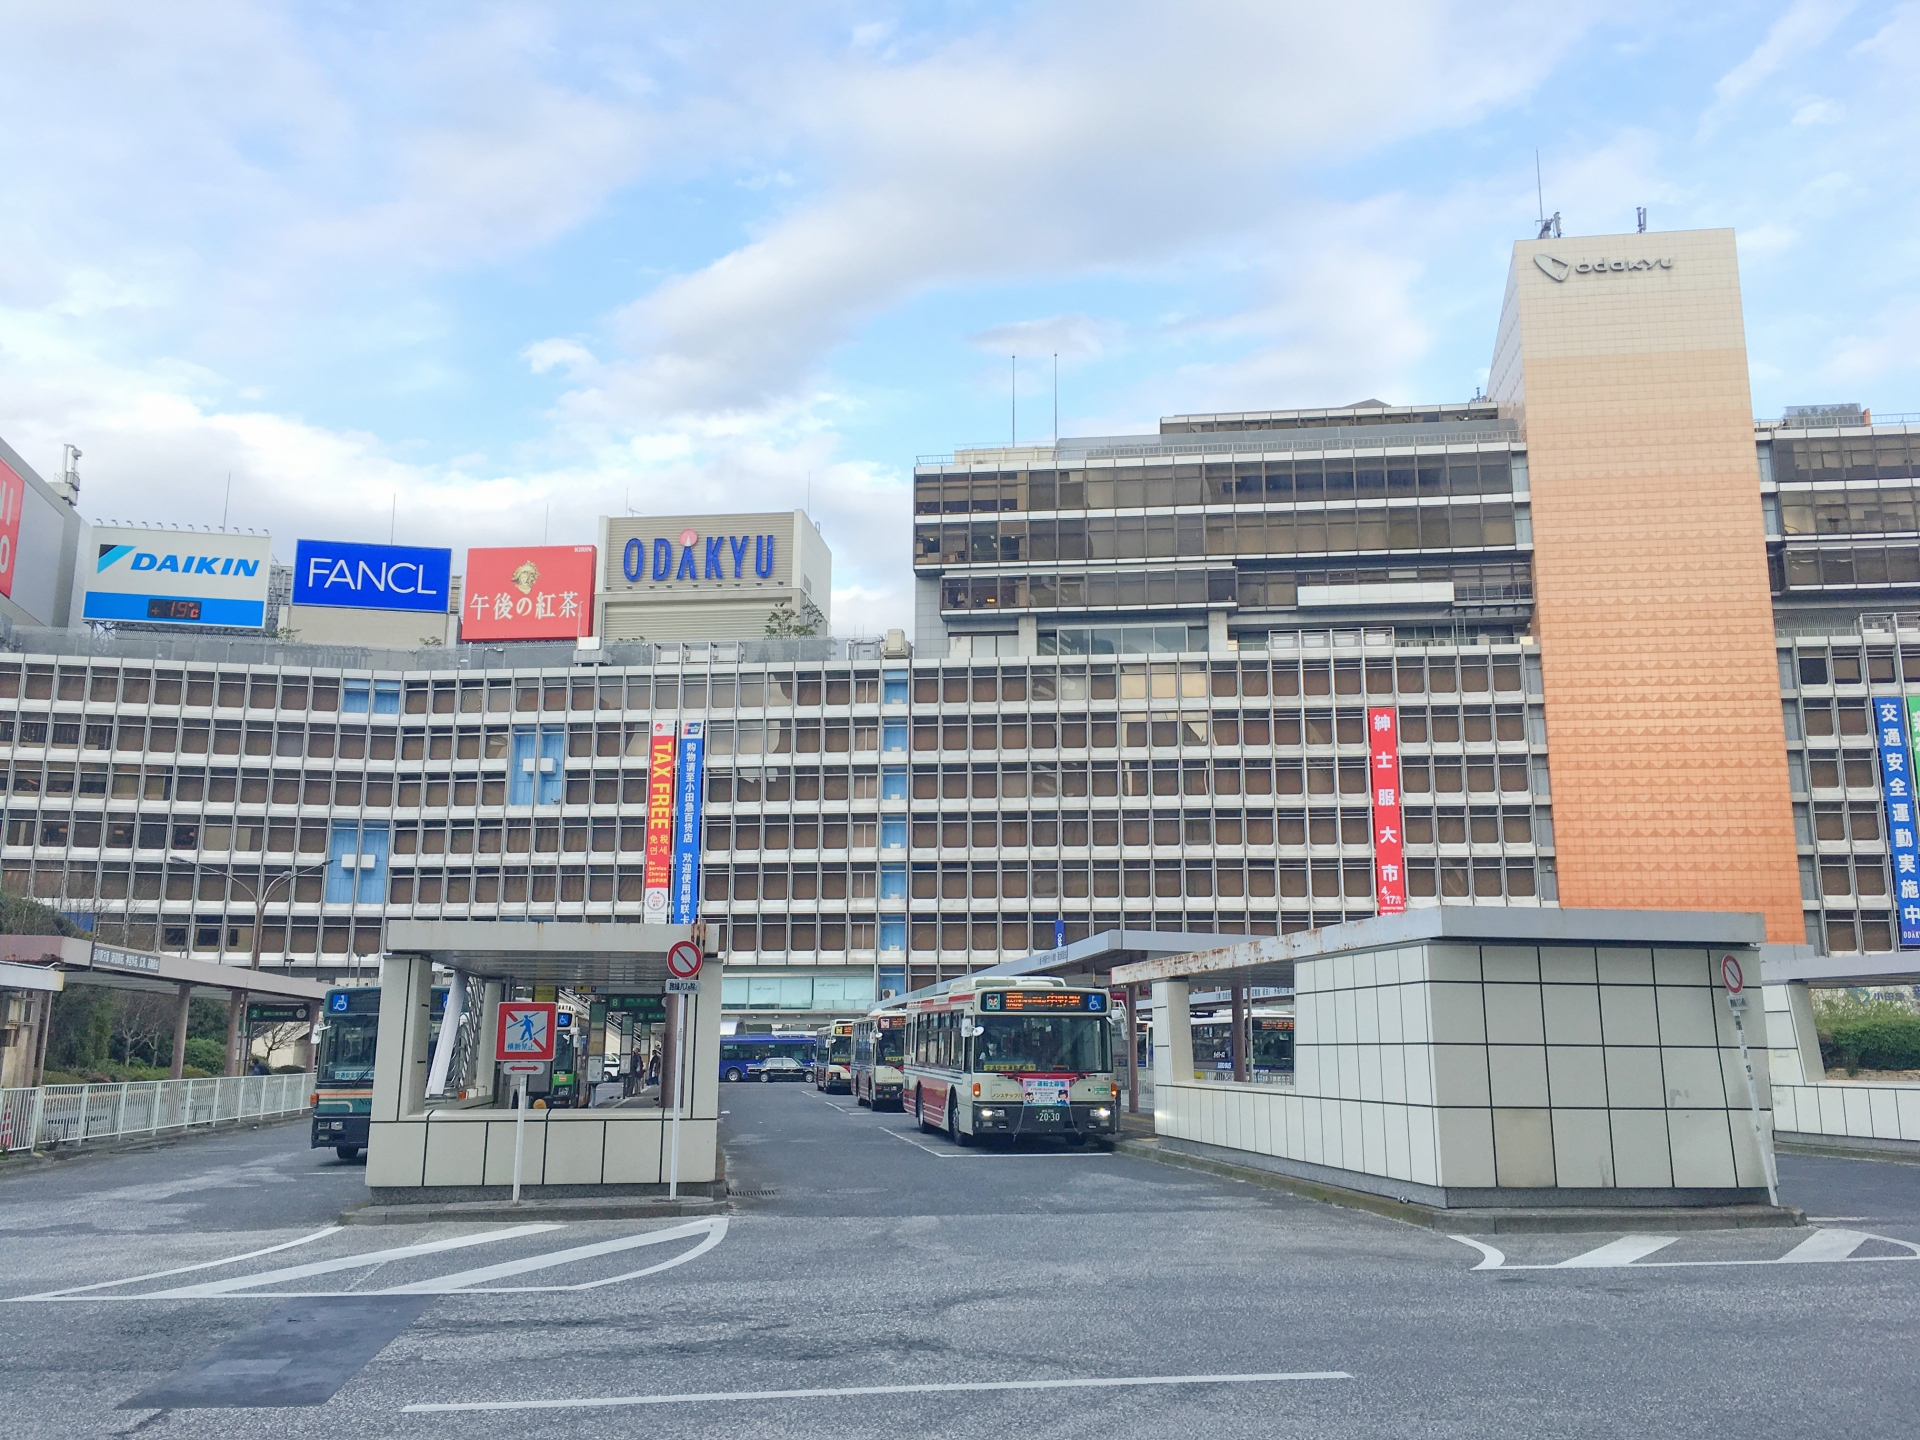 複数の鉄道路線が乗り入れる新宿駅。東口には日本最大の繁華街・歓楽街の新宿歌舞伎町、西口には超高層ビルが林立するオフィス街が広がっている。画像は新宿駅西口。